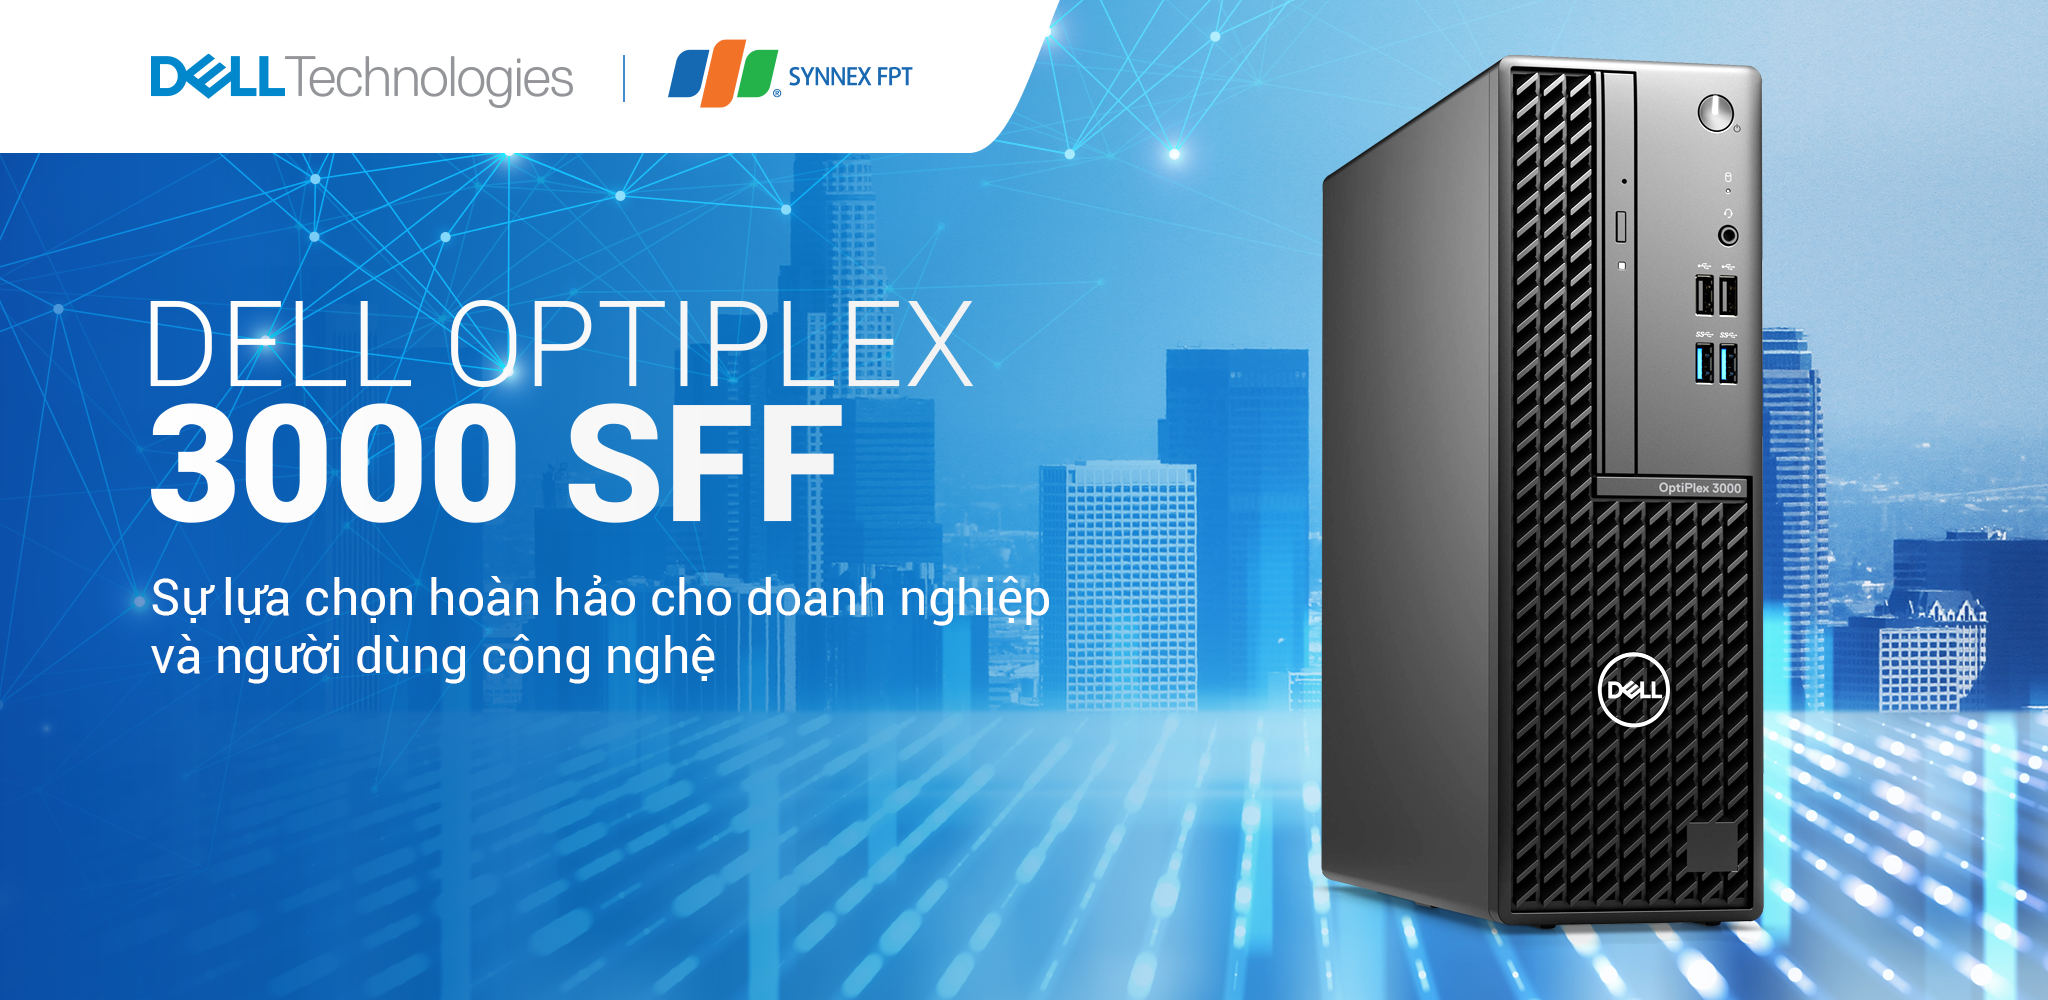 Đánh giá chi tiết về Dell OptiPlex 3000 SFF – Sự lựa chọn hoàn hảo cho doanh nghiệp và người dùng công nghệ 